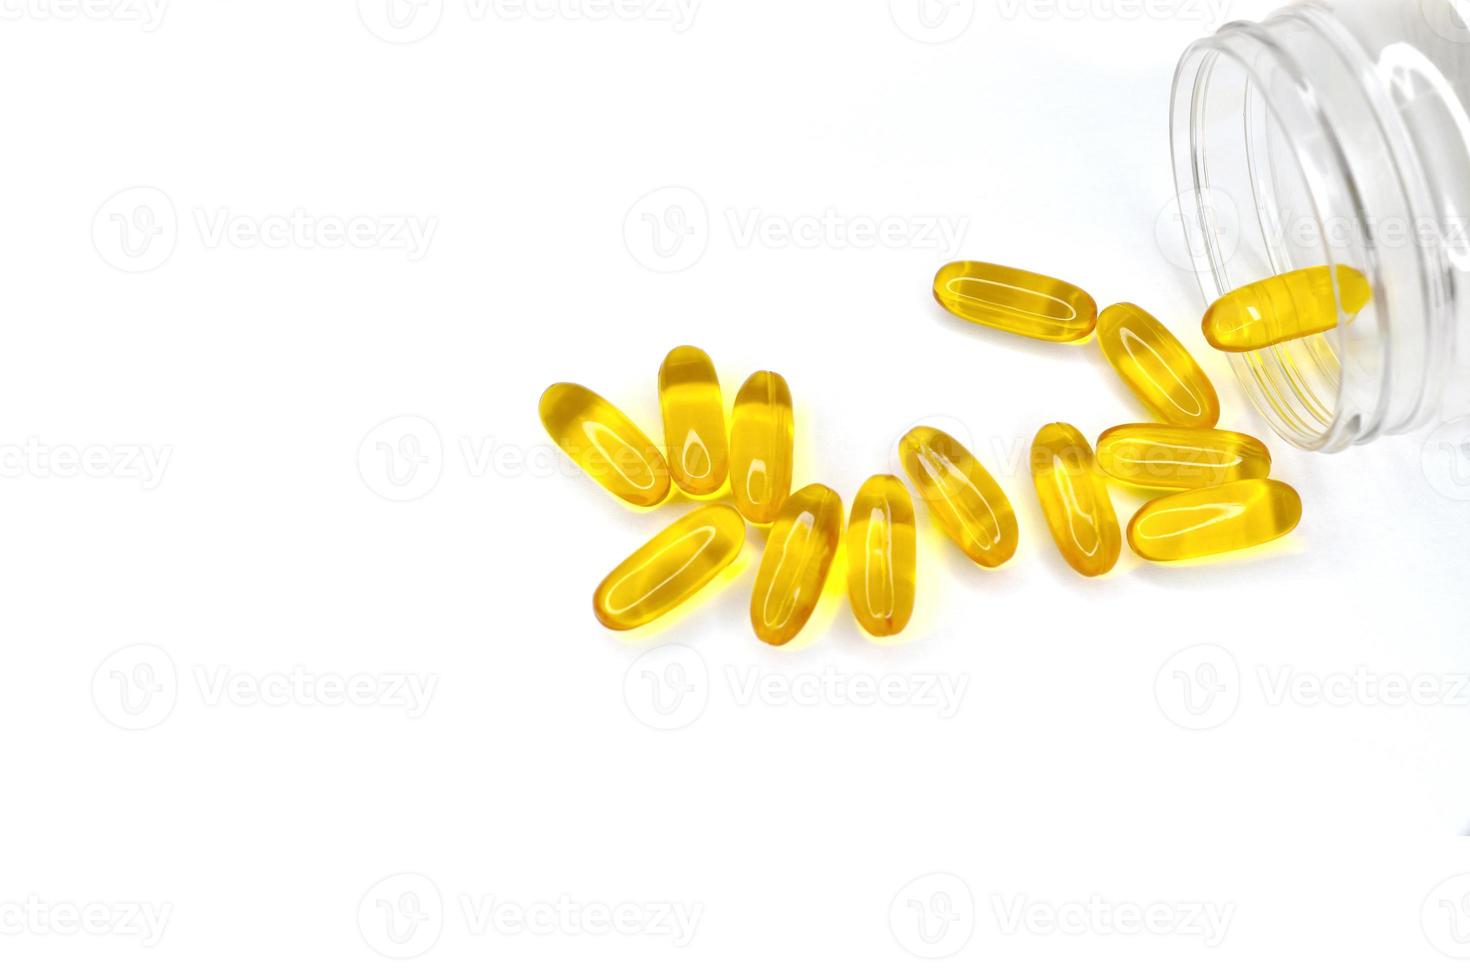 gyllene kapslar av piller hällde från en burk på en vit bakgrund. mediciner för behandling. fisk olja, Omega 3 foto